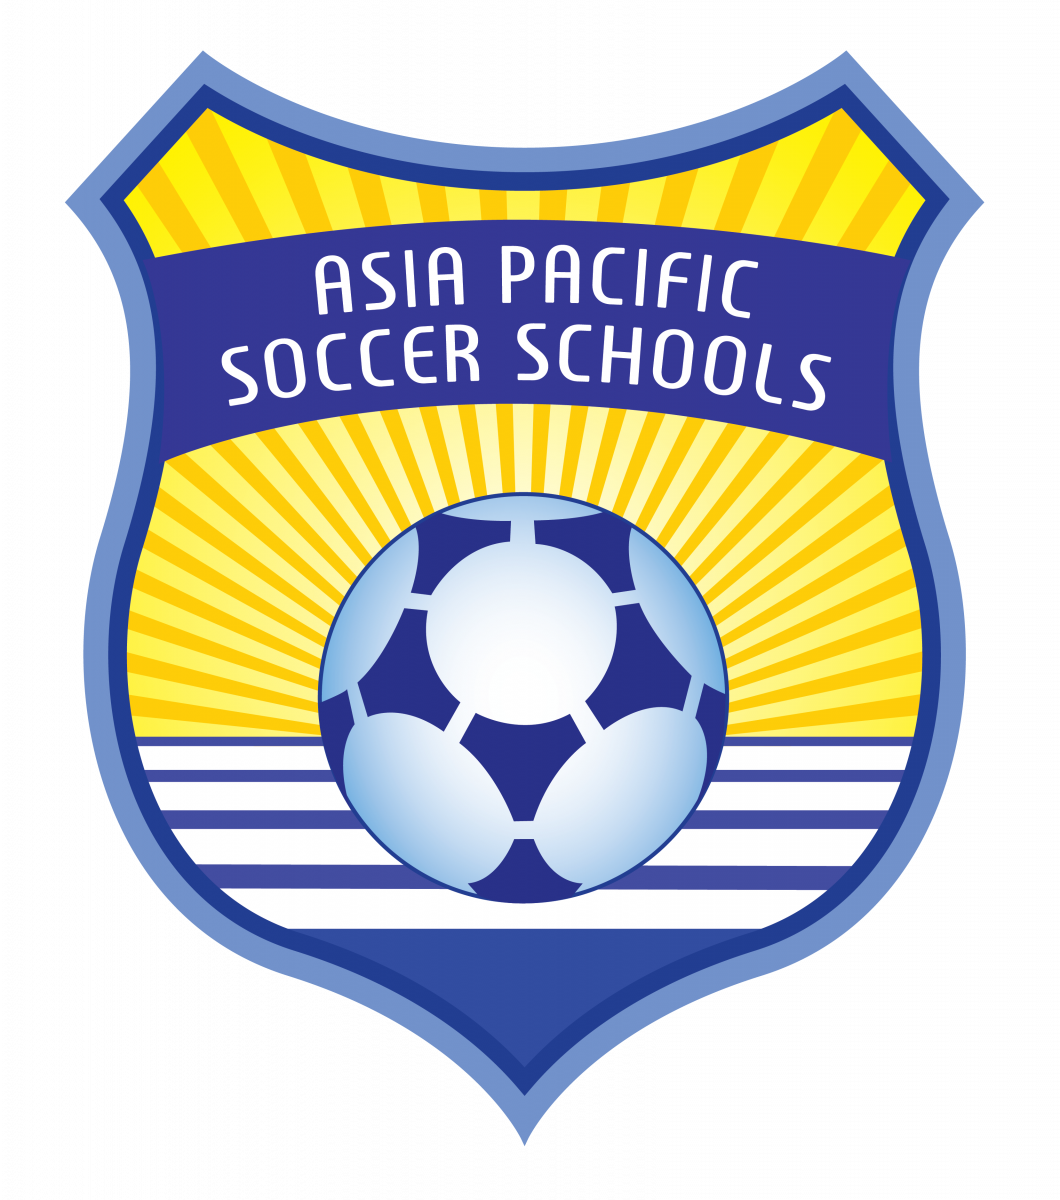 Asia Pacific Soccer School Avignon Clubhouse Gold Coast - Asia Pacific Soccer Schools (1060x1200)